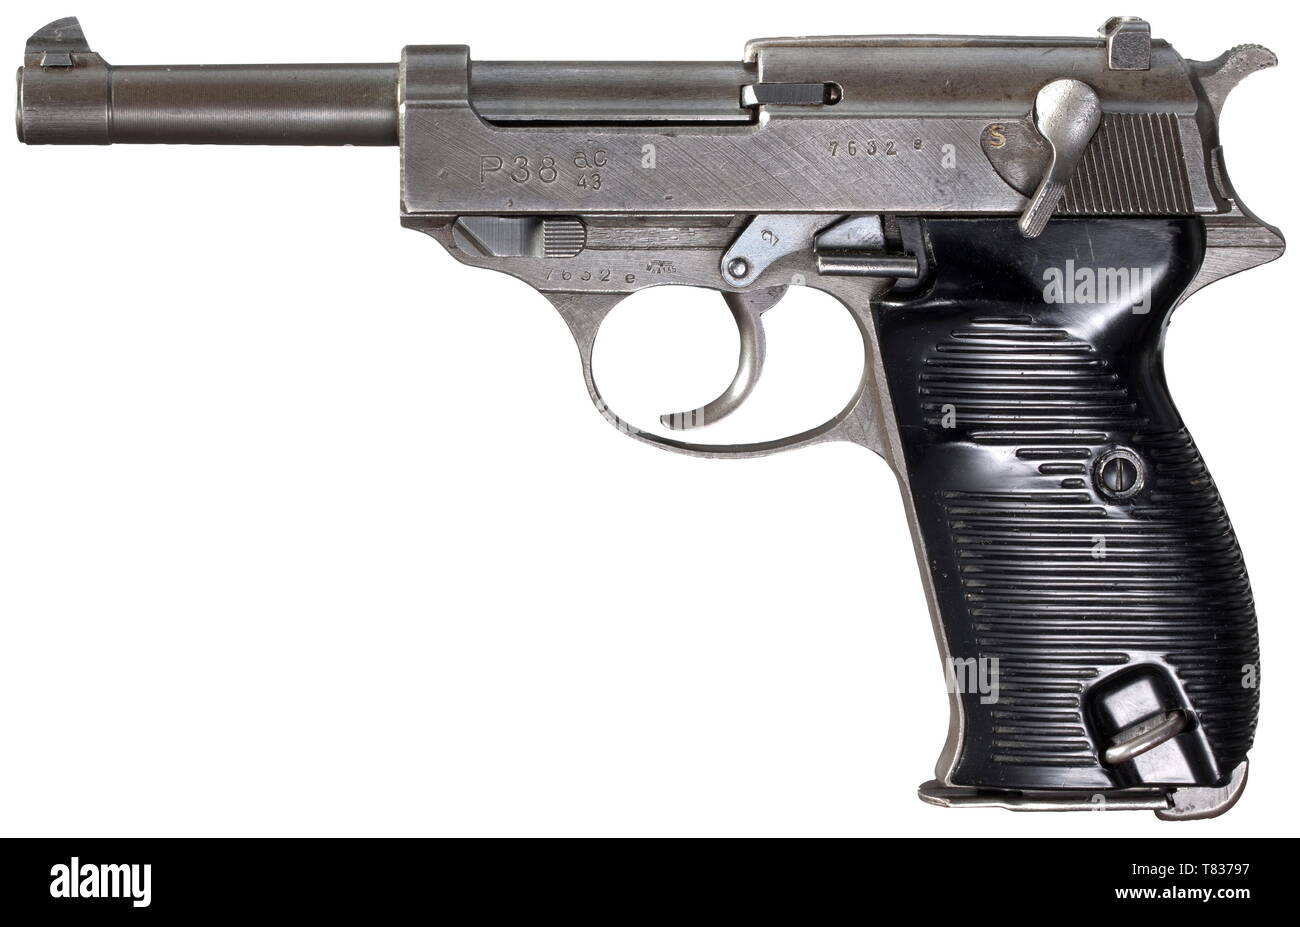 Mauser P 38 con FN slide 'ac 43', fosfatato Cal. 9 mm Parabellum, n. 7632e. I numeri corrispondenti. Simili a specchio alesaggio. Produzione circa nel marzo 1945. Accettazione segna eagle/DMG135 su parti principali. Far scorrere già pre-codificati 'ac 43' per Walther, sulla destra ulteriori asterisco mark. FN consegna occupato dal Belgio per mauser invece di Walther al fine di facilitare la loro scarsità di materiale degli ultimi mesi di guerra. Trigger e sicurezza con segni di accettazione eagle/359 come parti di alimentazione da Walther. Originale completo, grigio chiaro di fosfatazione inclusi canna, parziale, Additional-Rights-Clearance-Info-Not-Available Foto Stock